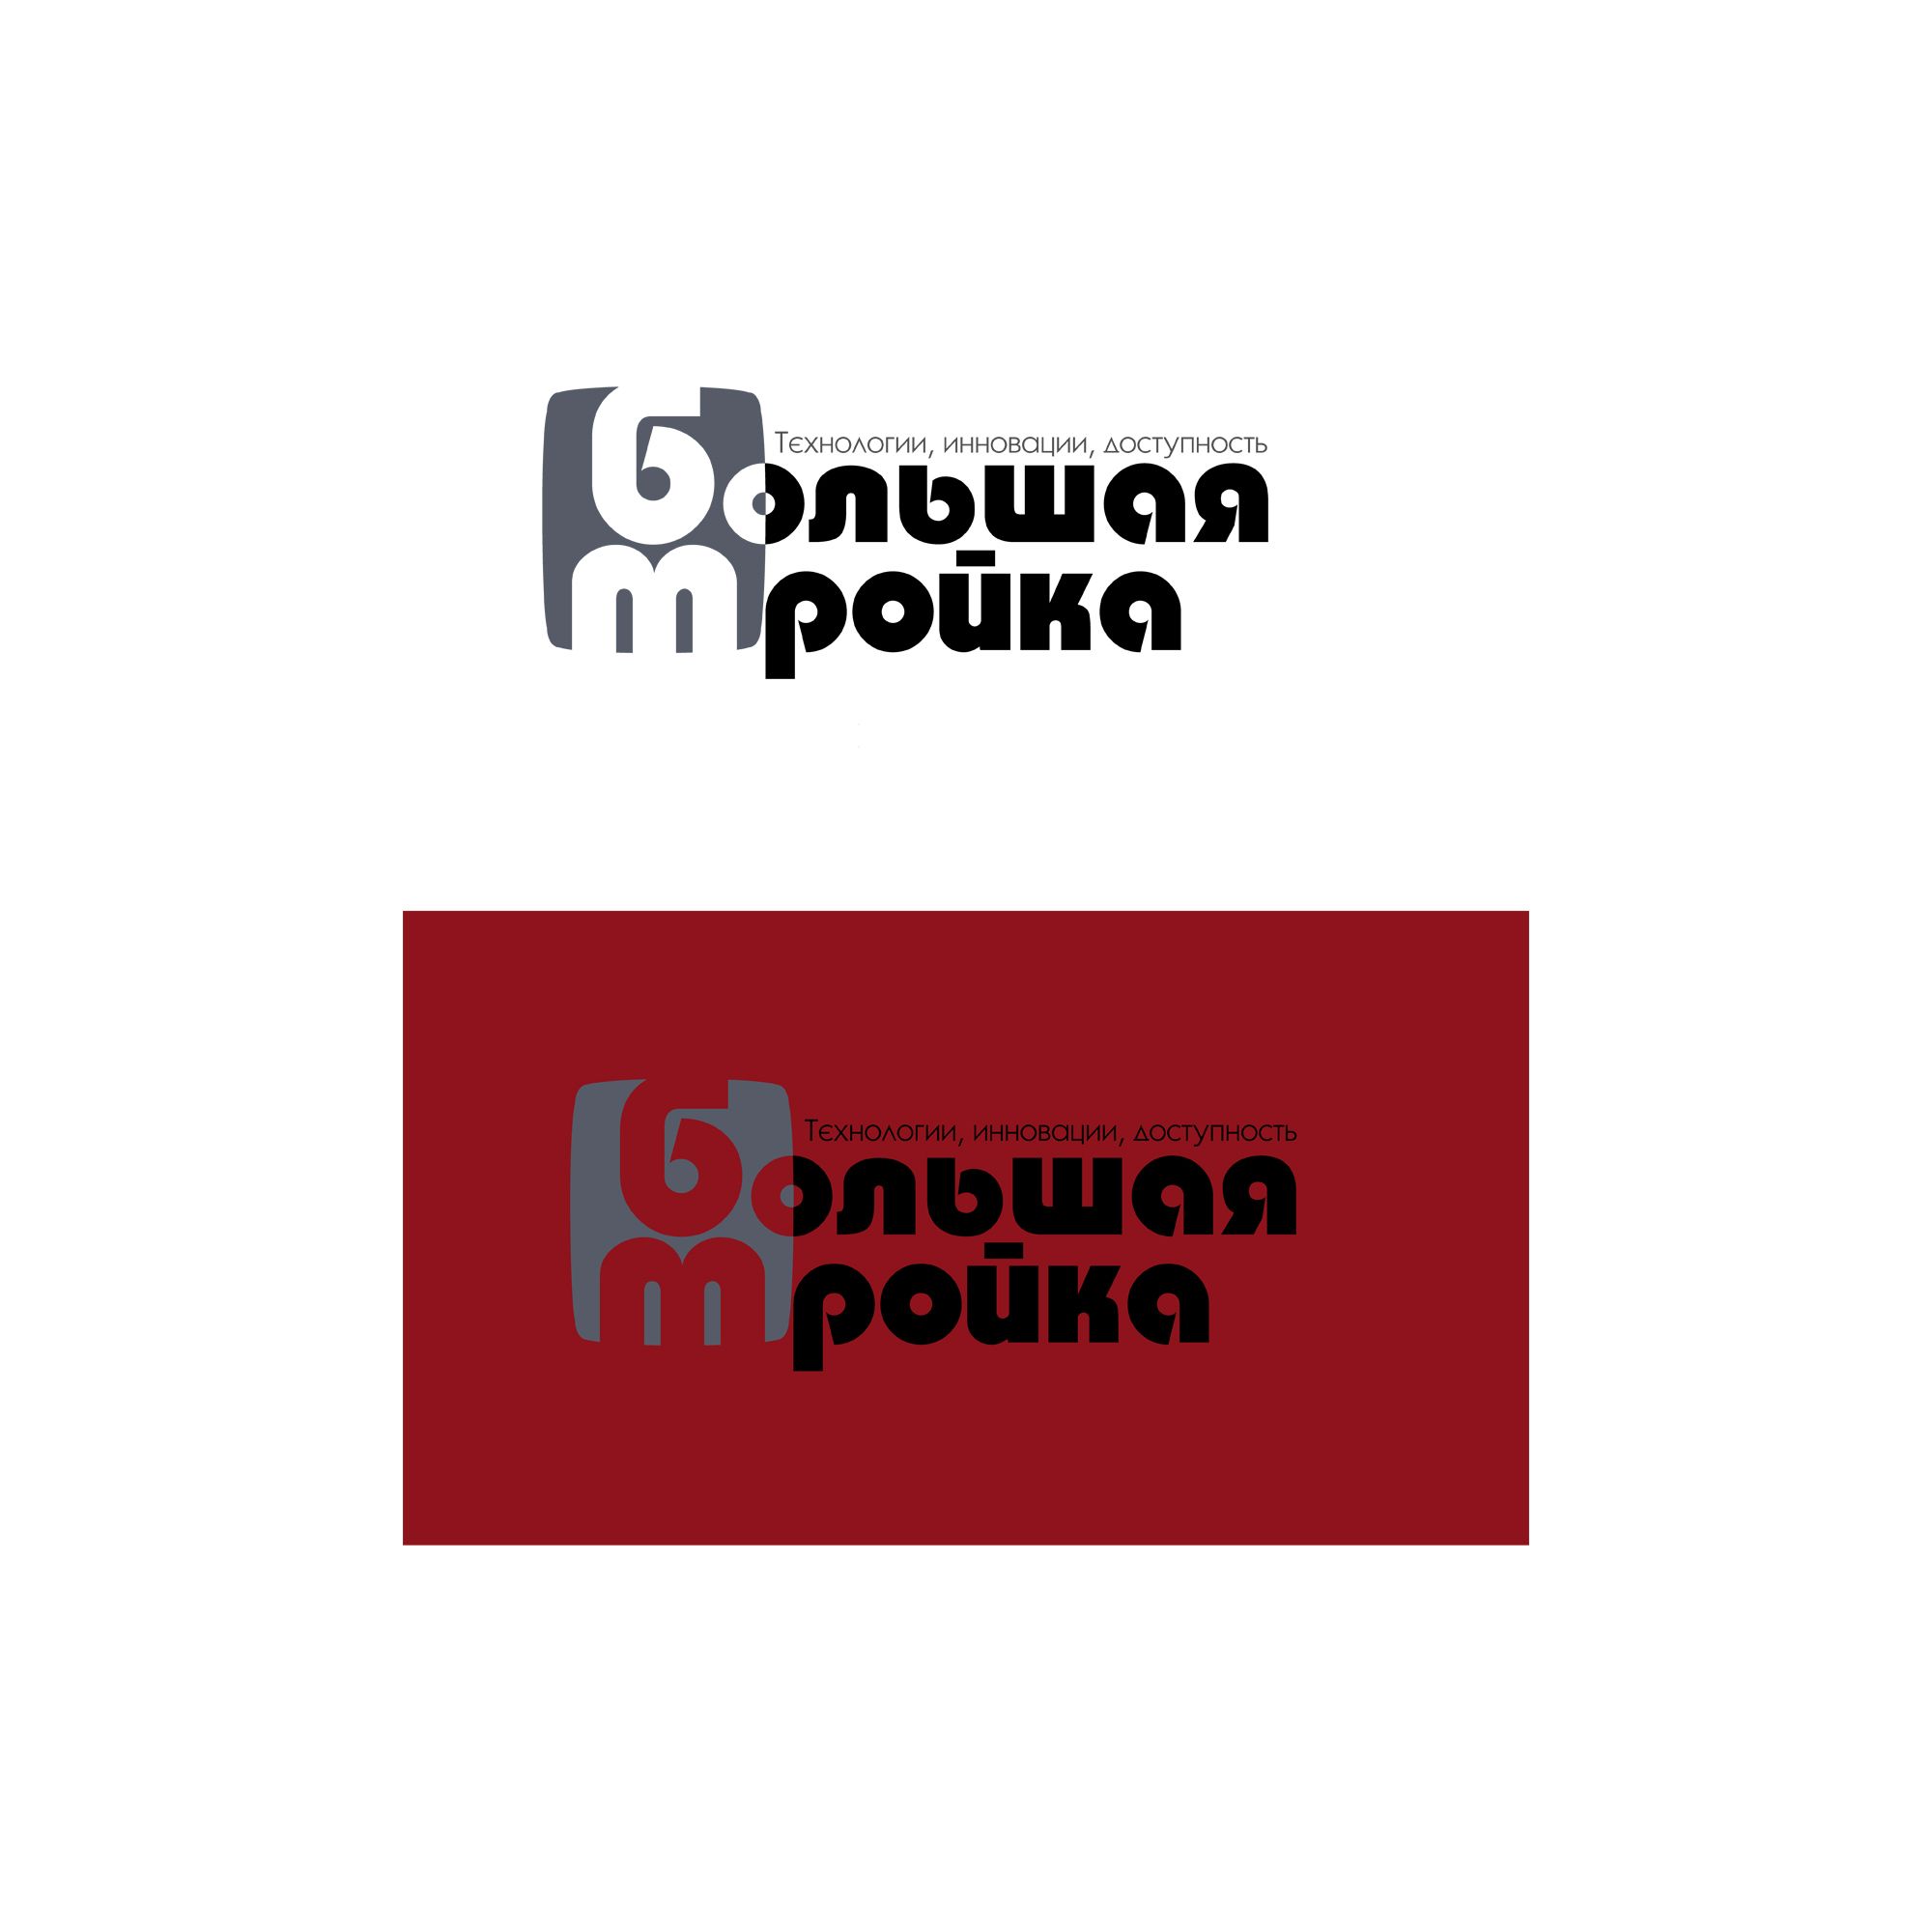 Логотип инновационной компании Большая Тройка - дизайнер atmannn